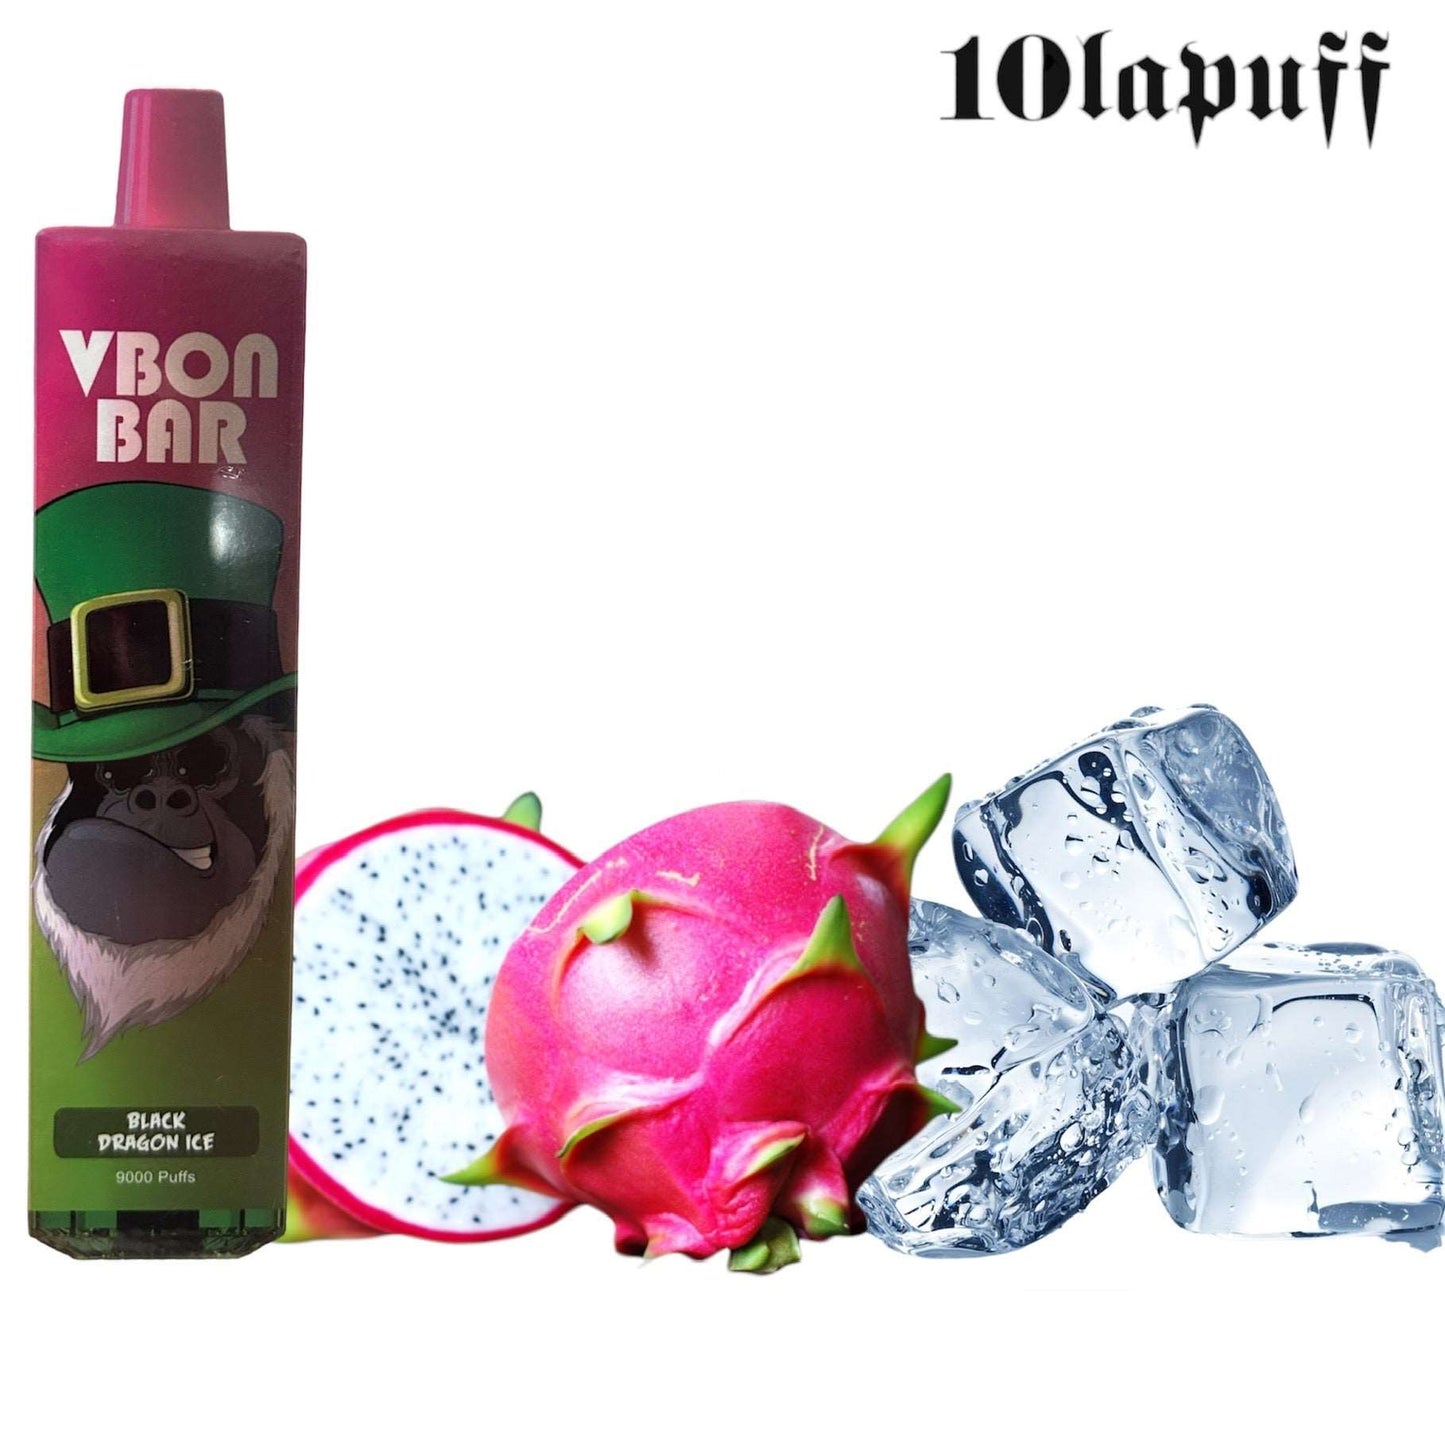 PUFF 9000 VBON - 21 parfums - Offre limitée sélection inédite